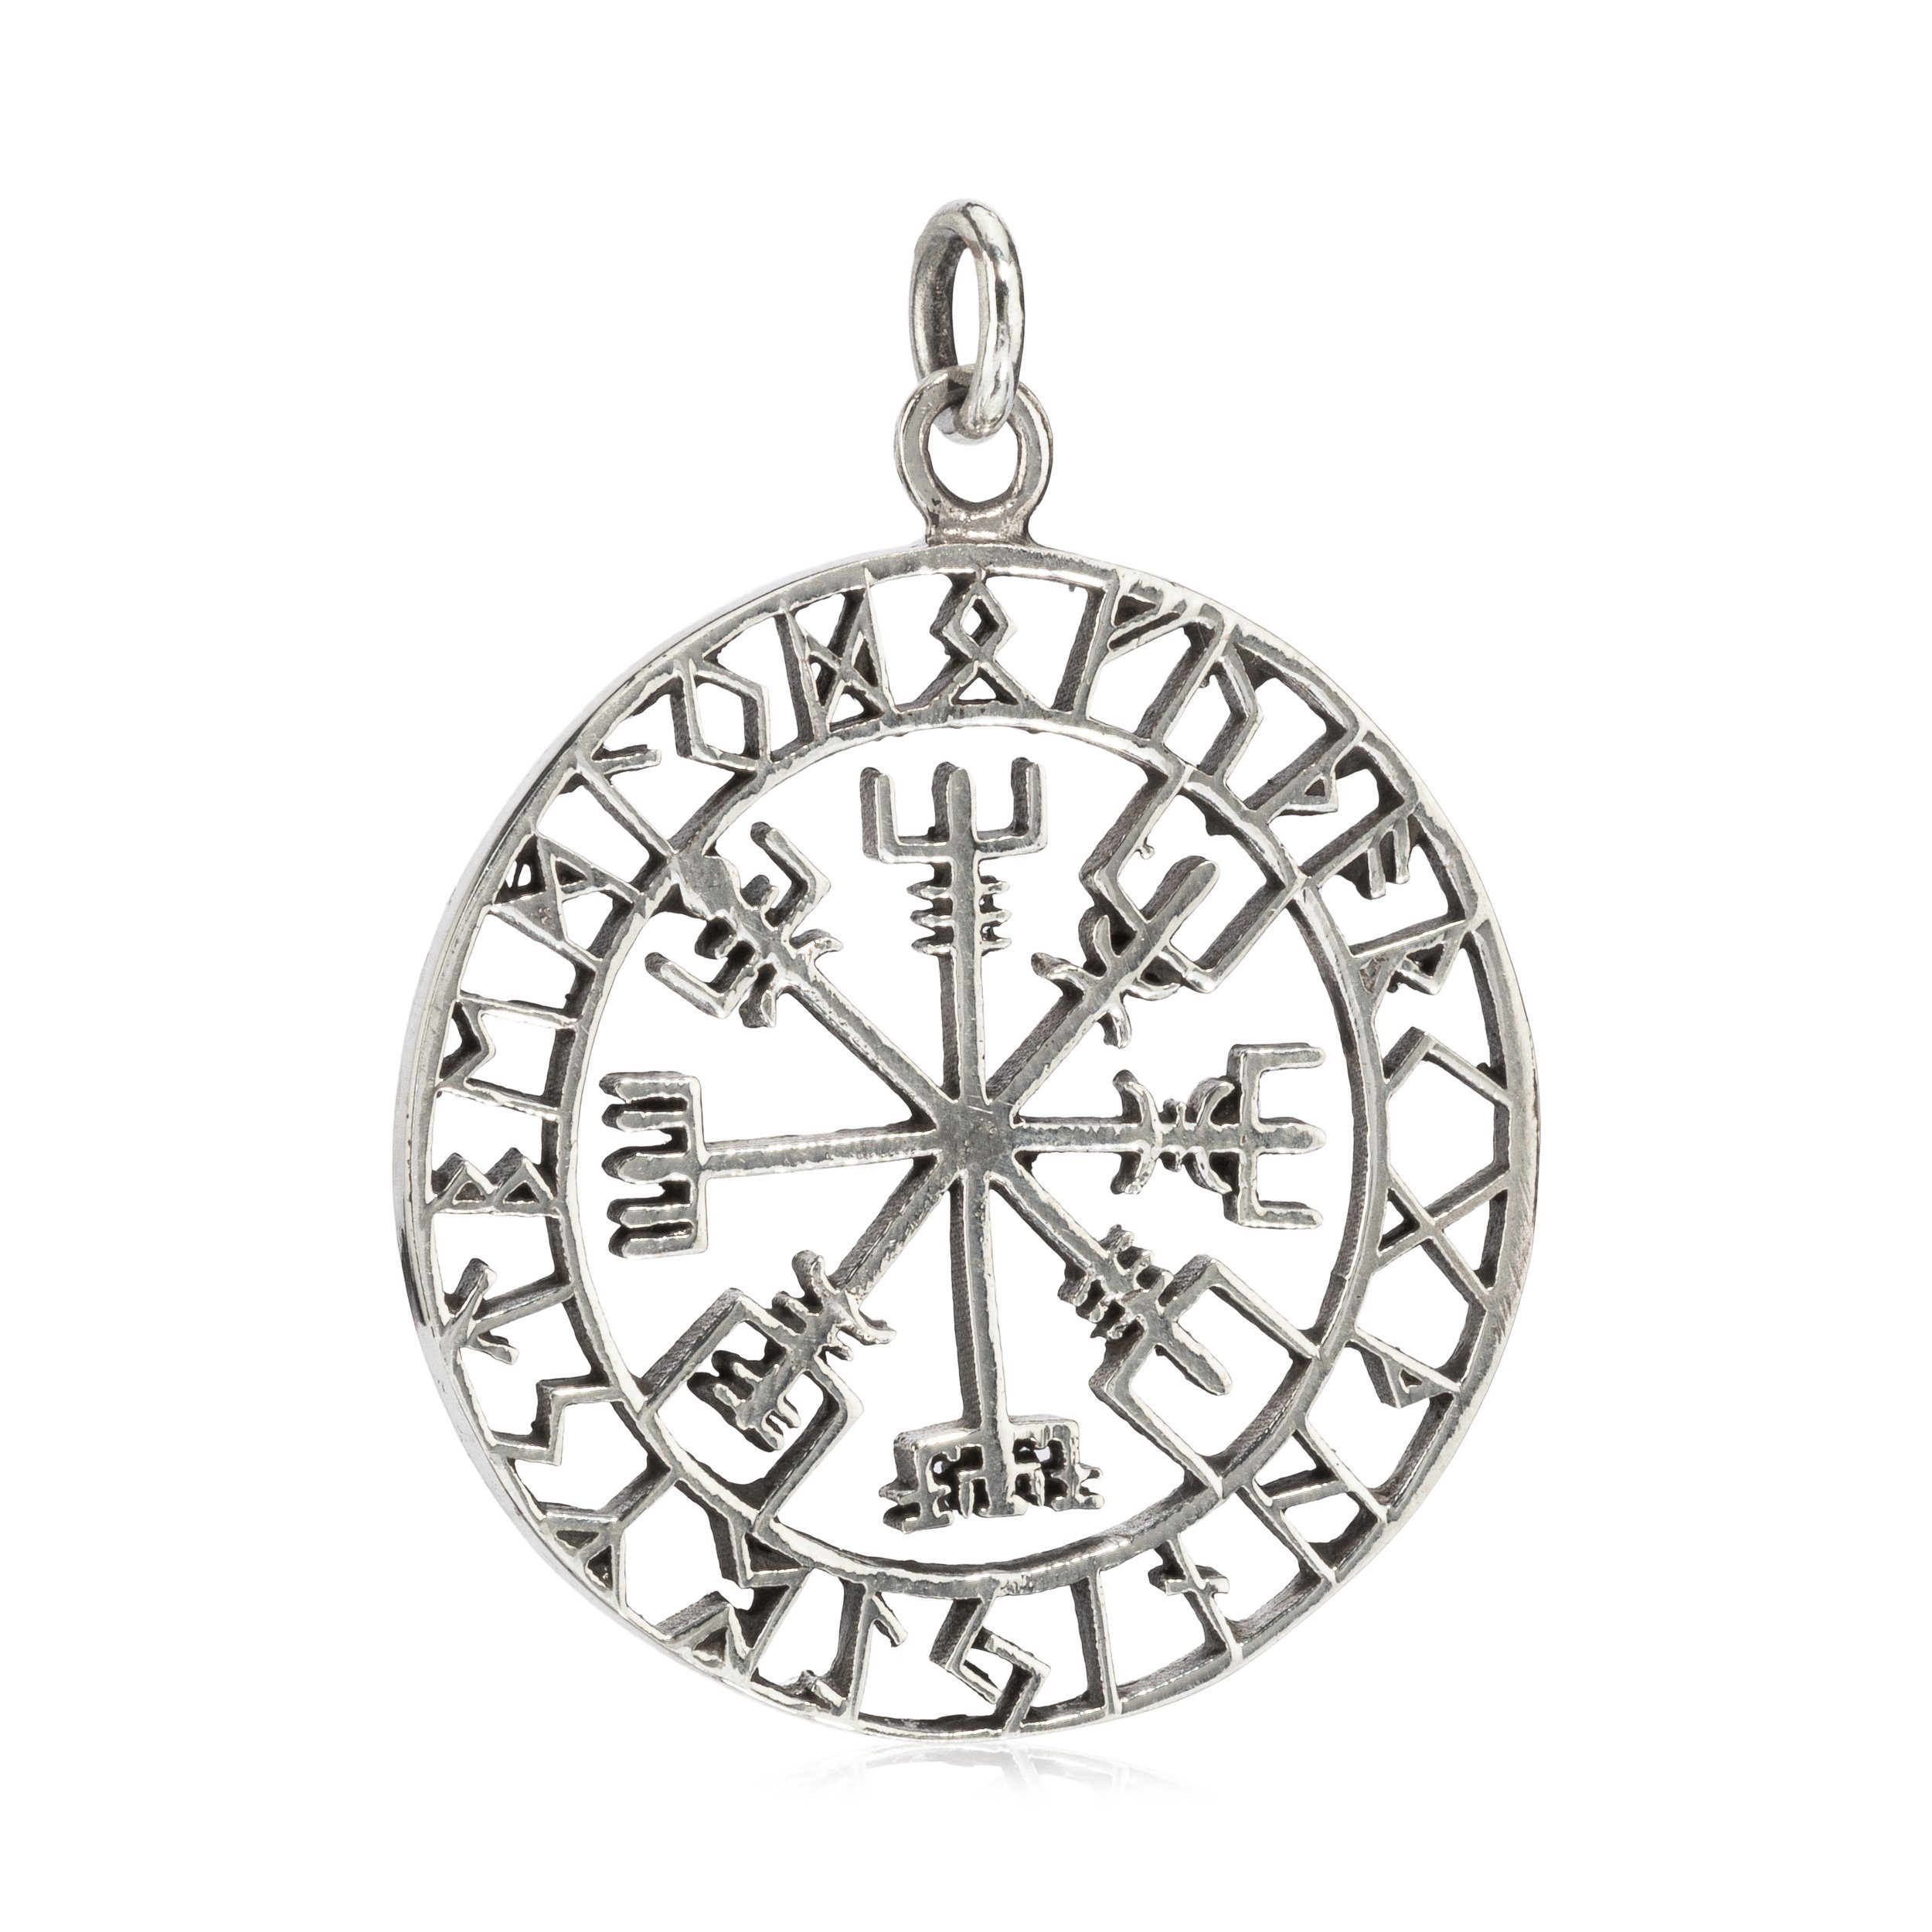 NKlaus Kettenanhänger 3,6cm Kettenanhänger Silbe, Silberschmuck für Damen Vegvisir 925 Amulett Silber Runen Sterling